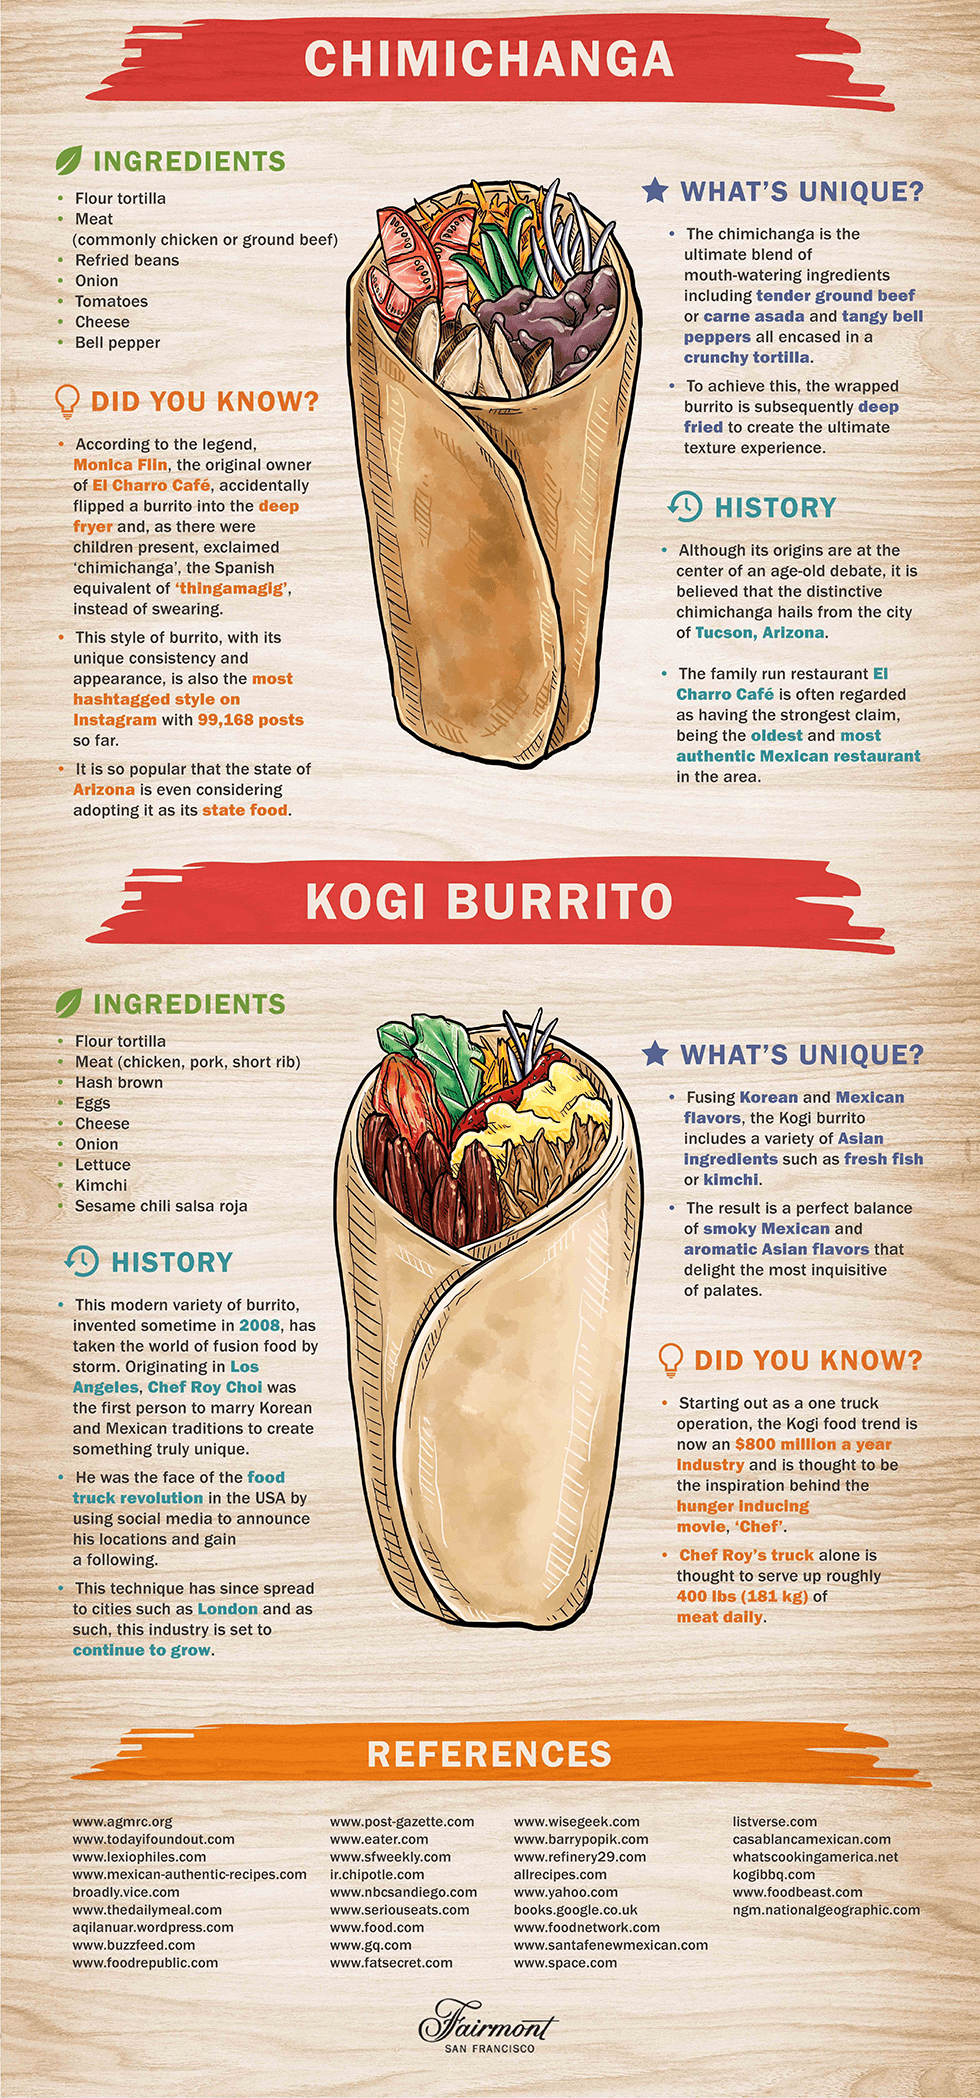 burrito style origins